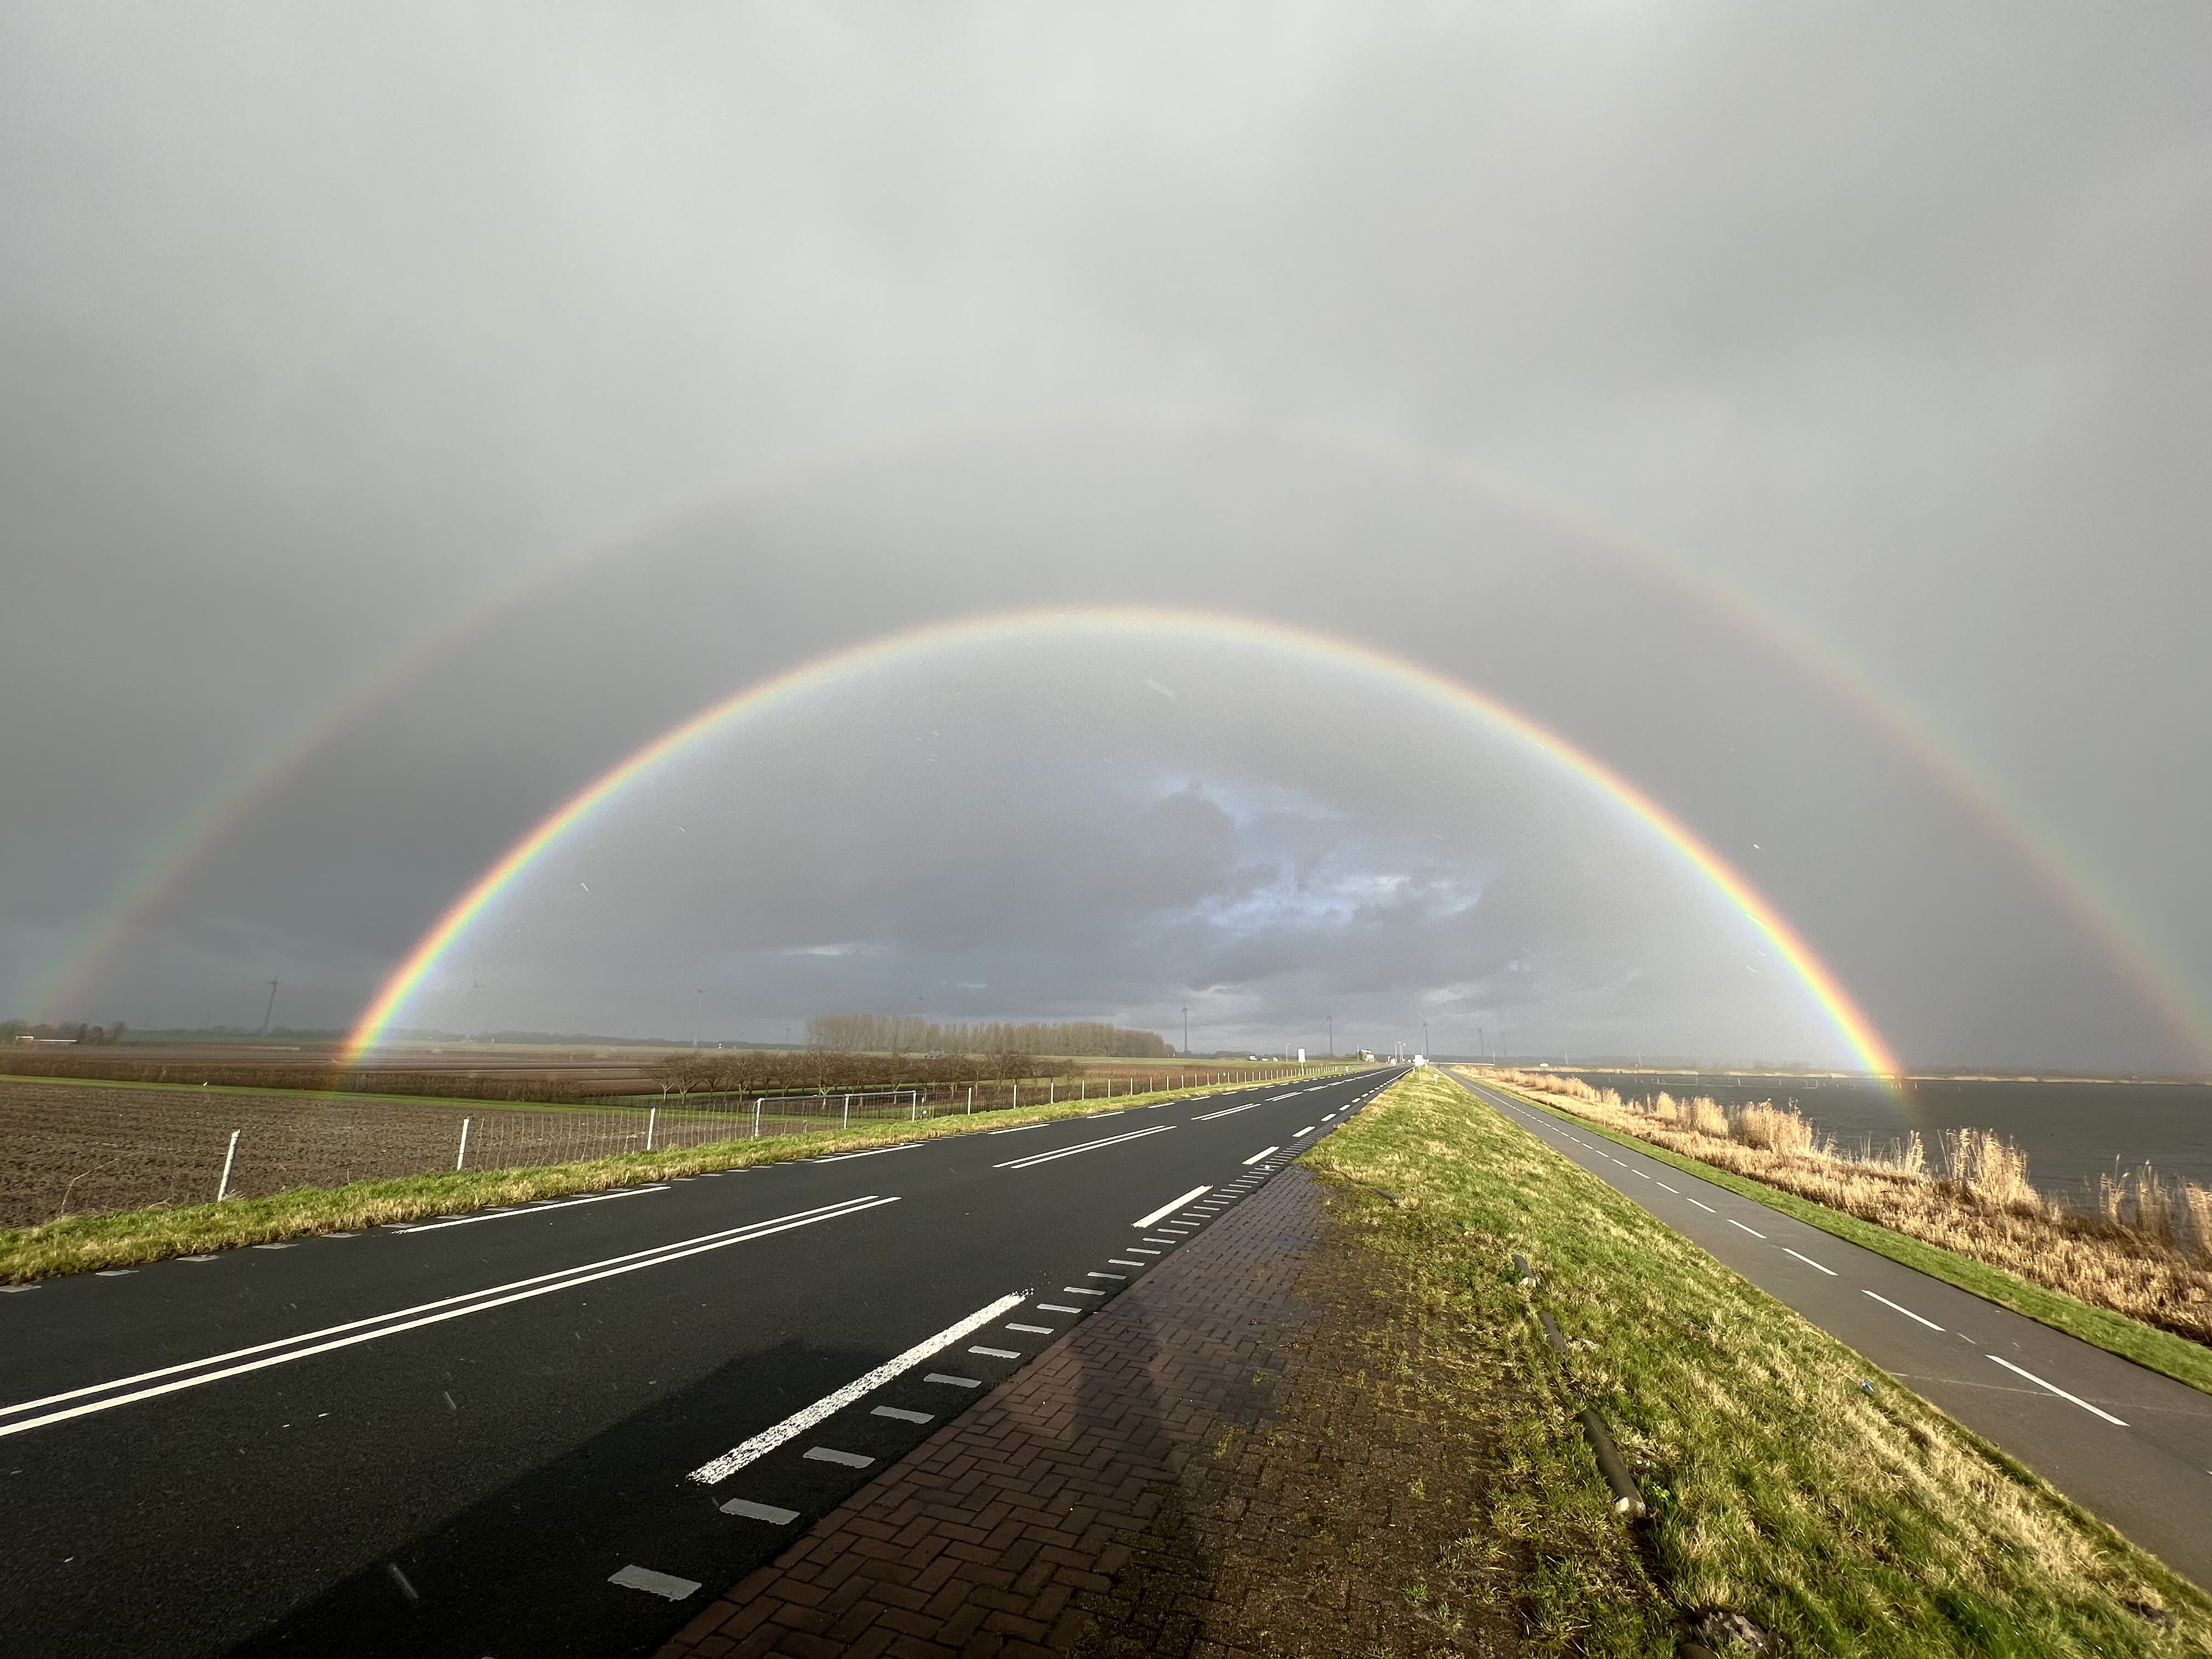 Wisselvallig weer heeft ook mooie kanten, zoals deze prachtige dubbele regenboog! Foto: Mattheus van der Steen.